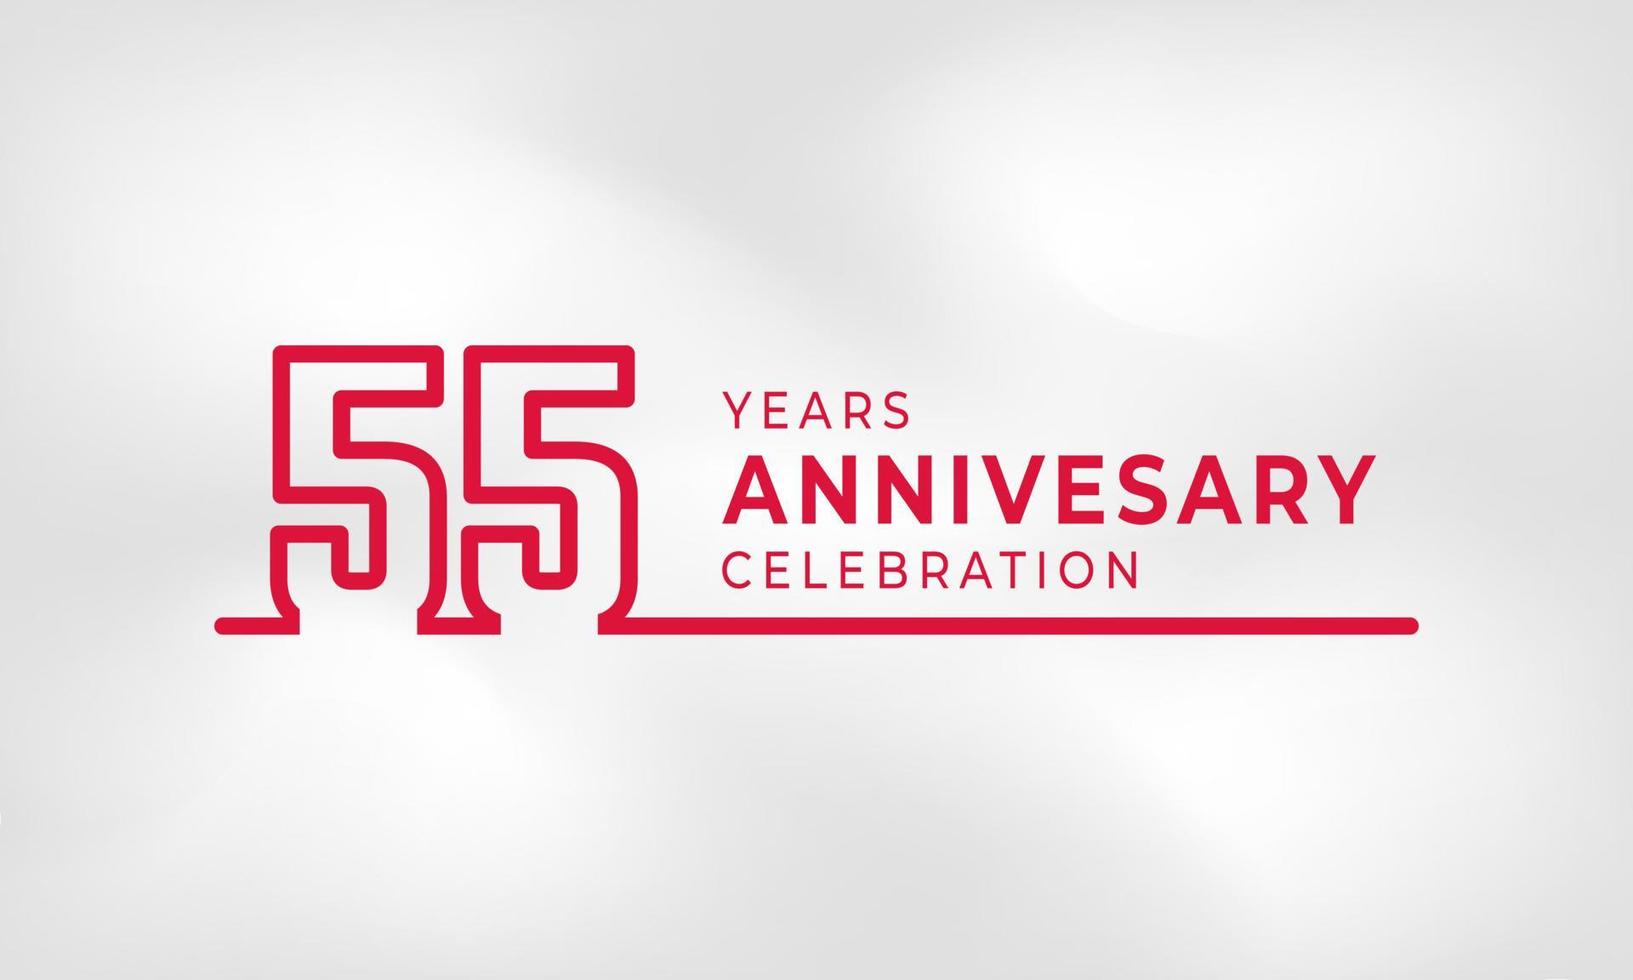 Celebración del aniversario de 55 años Número de esquema de logotipo vinculado color rojo para evento de celebración, boda, tarjeta de felicitación e invitación aislado en fondo de textura blanca vector